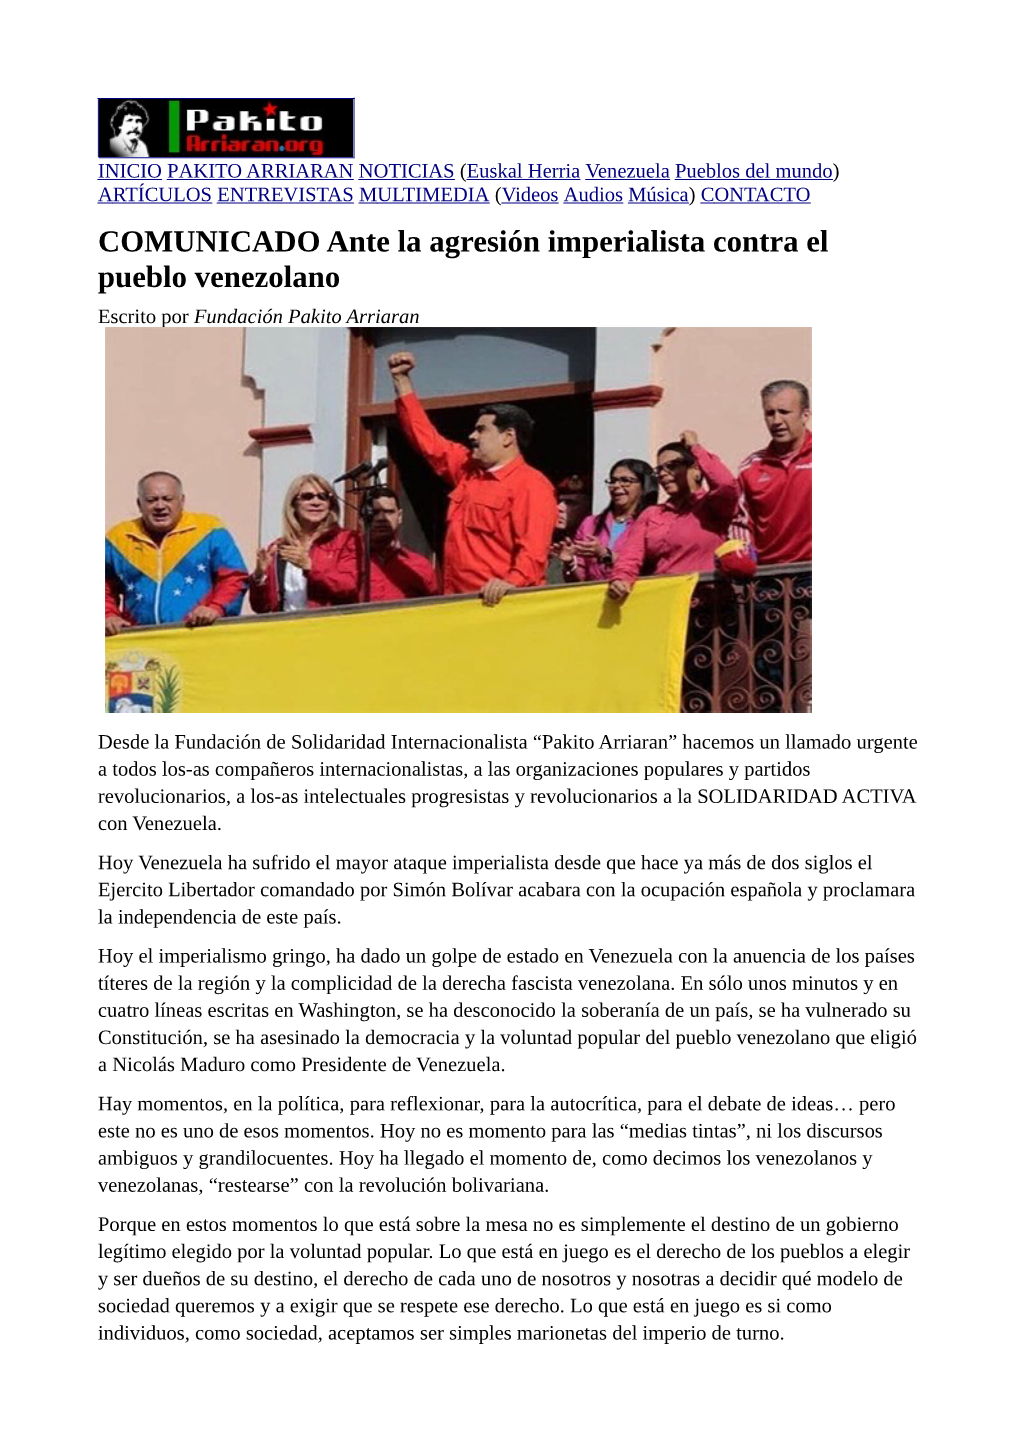 COMUNICADO Ante La Agresión Imperialista Contra El Pueblo Venezolano Escrito Por Fundación Pakito Arriaran